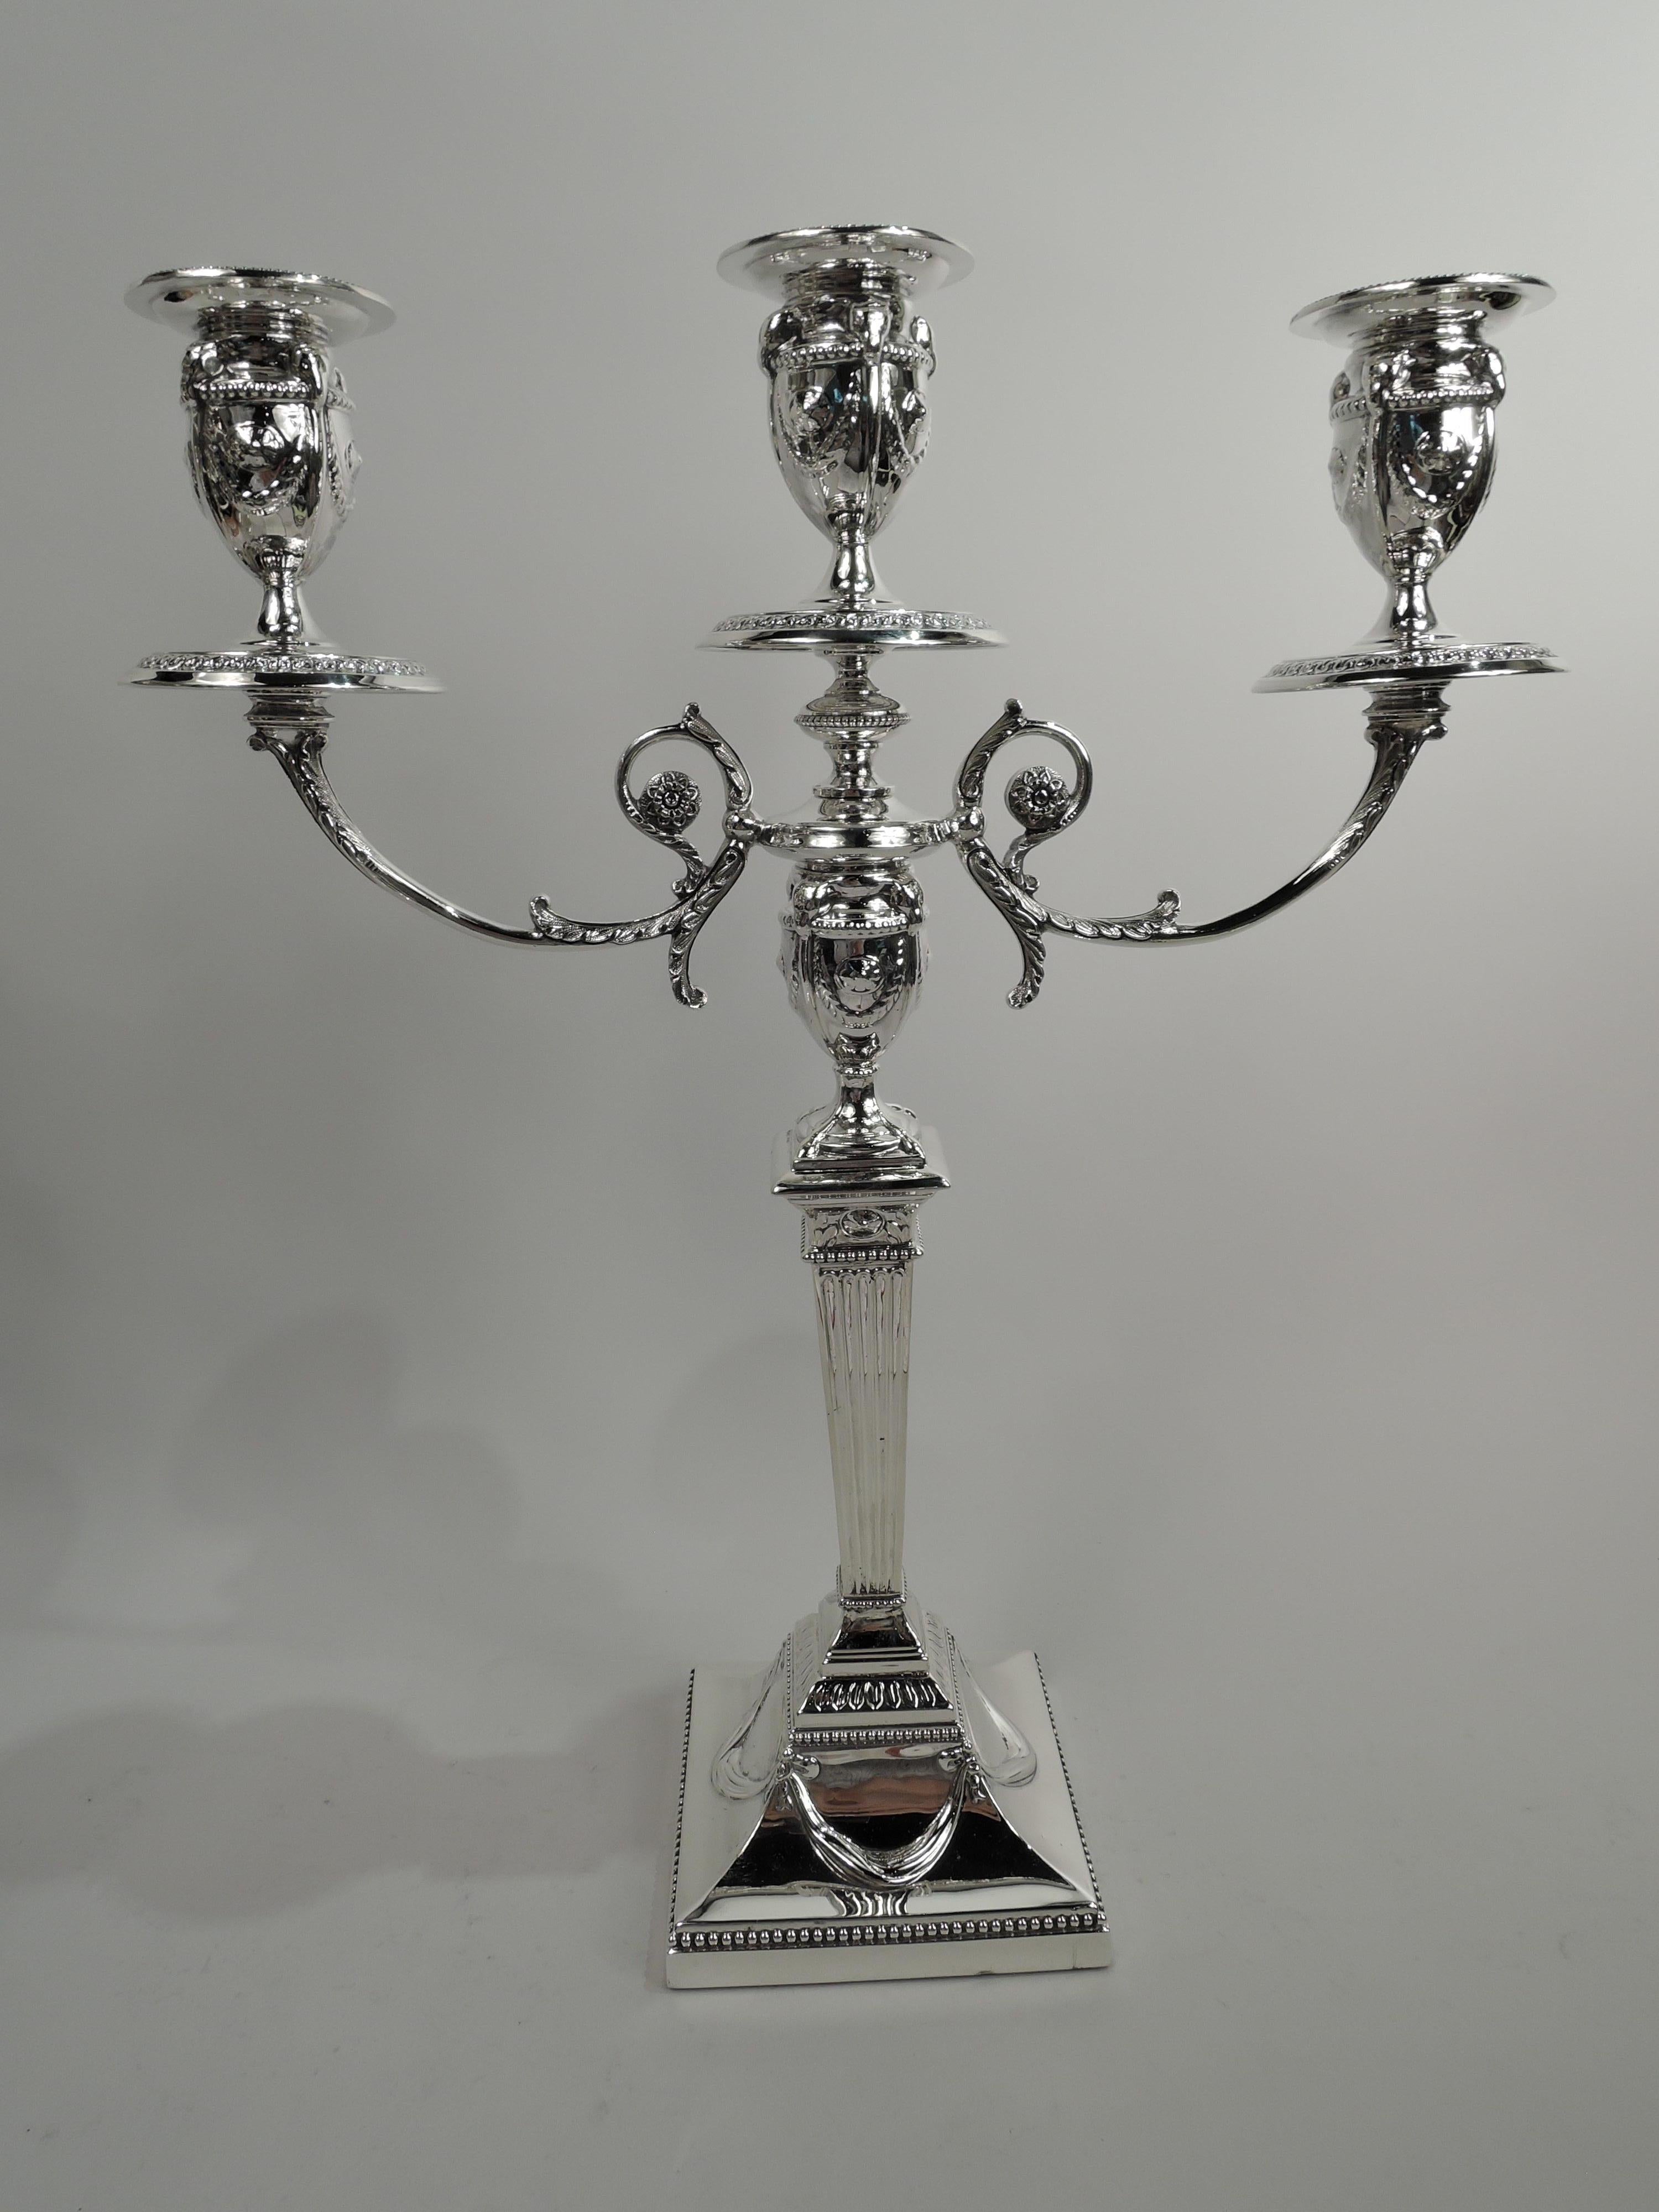 Paire de candélabres néoclassiques victoriens à 3 lumières en argent sterling. Fabriqué par Walker & Hall à Sheffield en 1898. Tige effilée et cannelée sur un pied carré relevé. La douille centrale est posée sur une base en forme de bouton sur